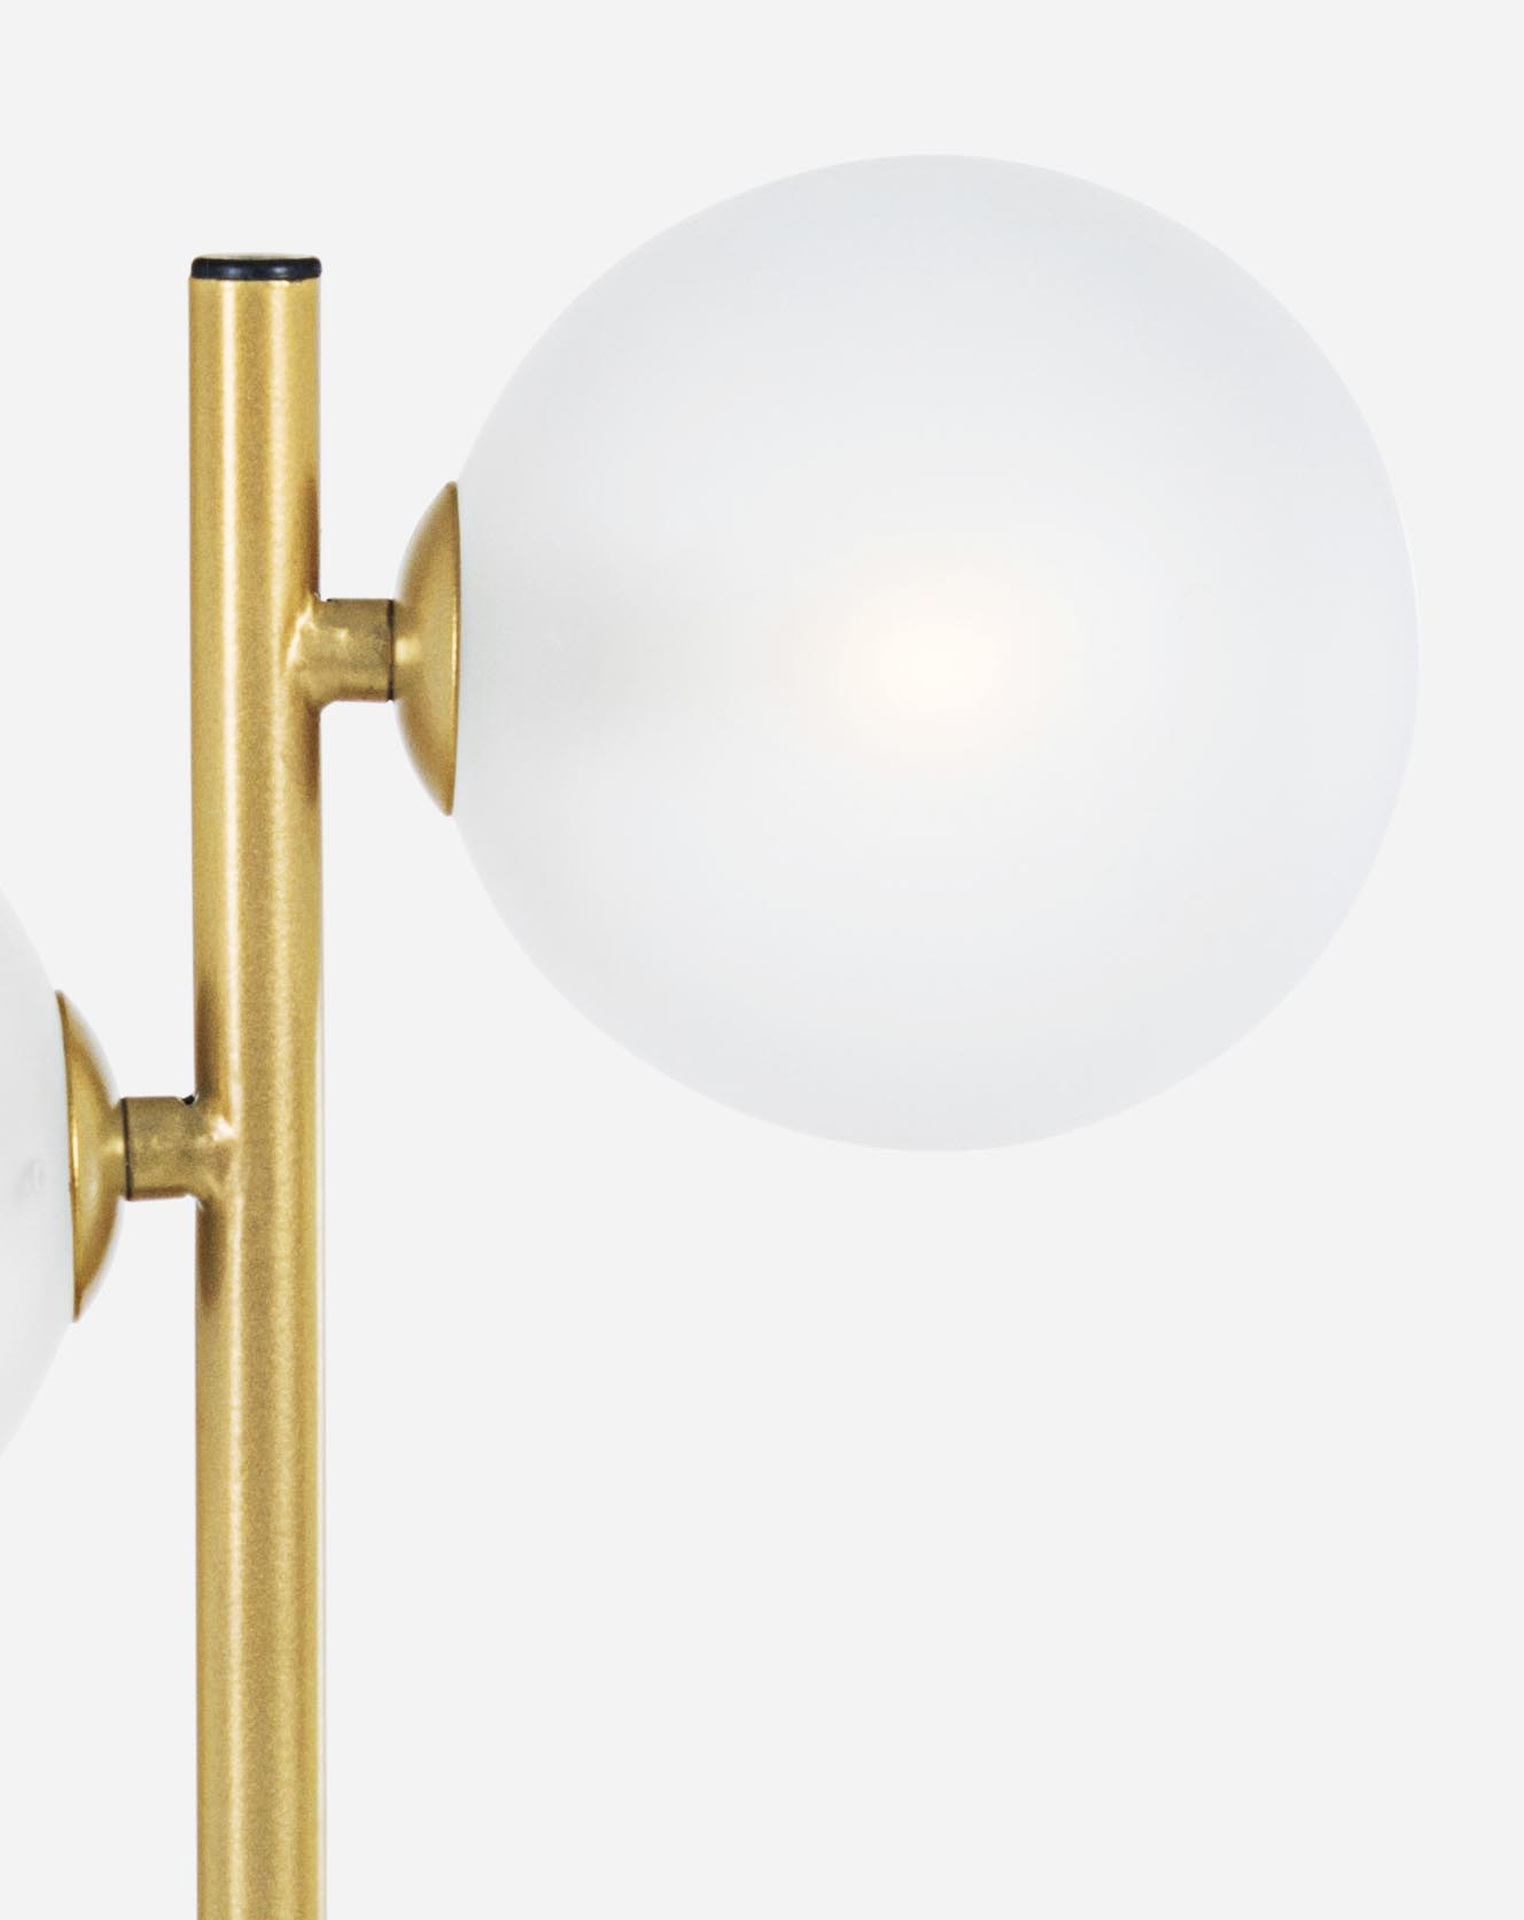 Die Tischleuchte Balls überzeugt mit ihrem modernen Design. Gefertigt wurde sie aus Metall, welches einen goldenen Farbton besitzt. Die Lichtquellen sind aus Milchglas. Die Lampe besitzt eine Höhe von 54 cm.